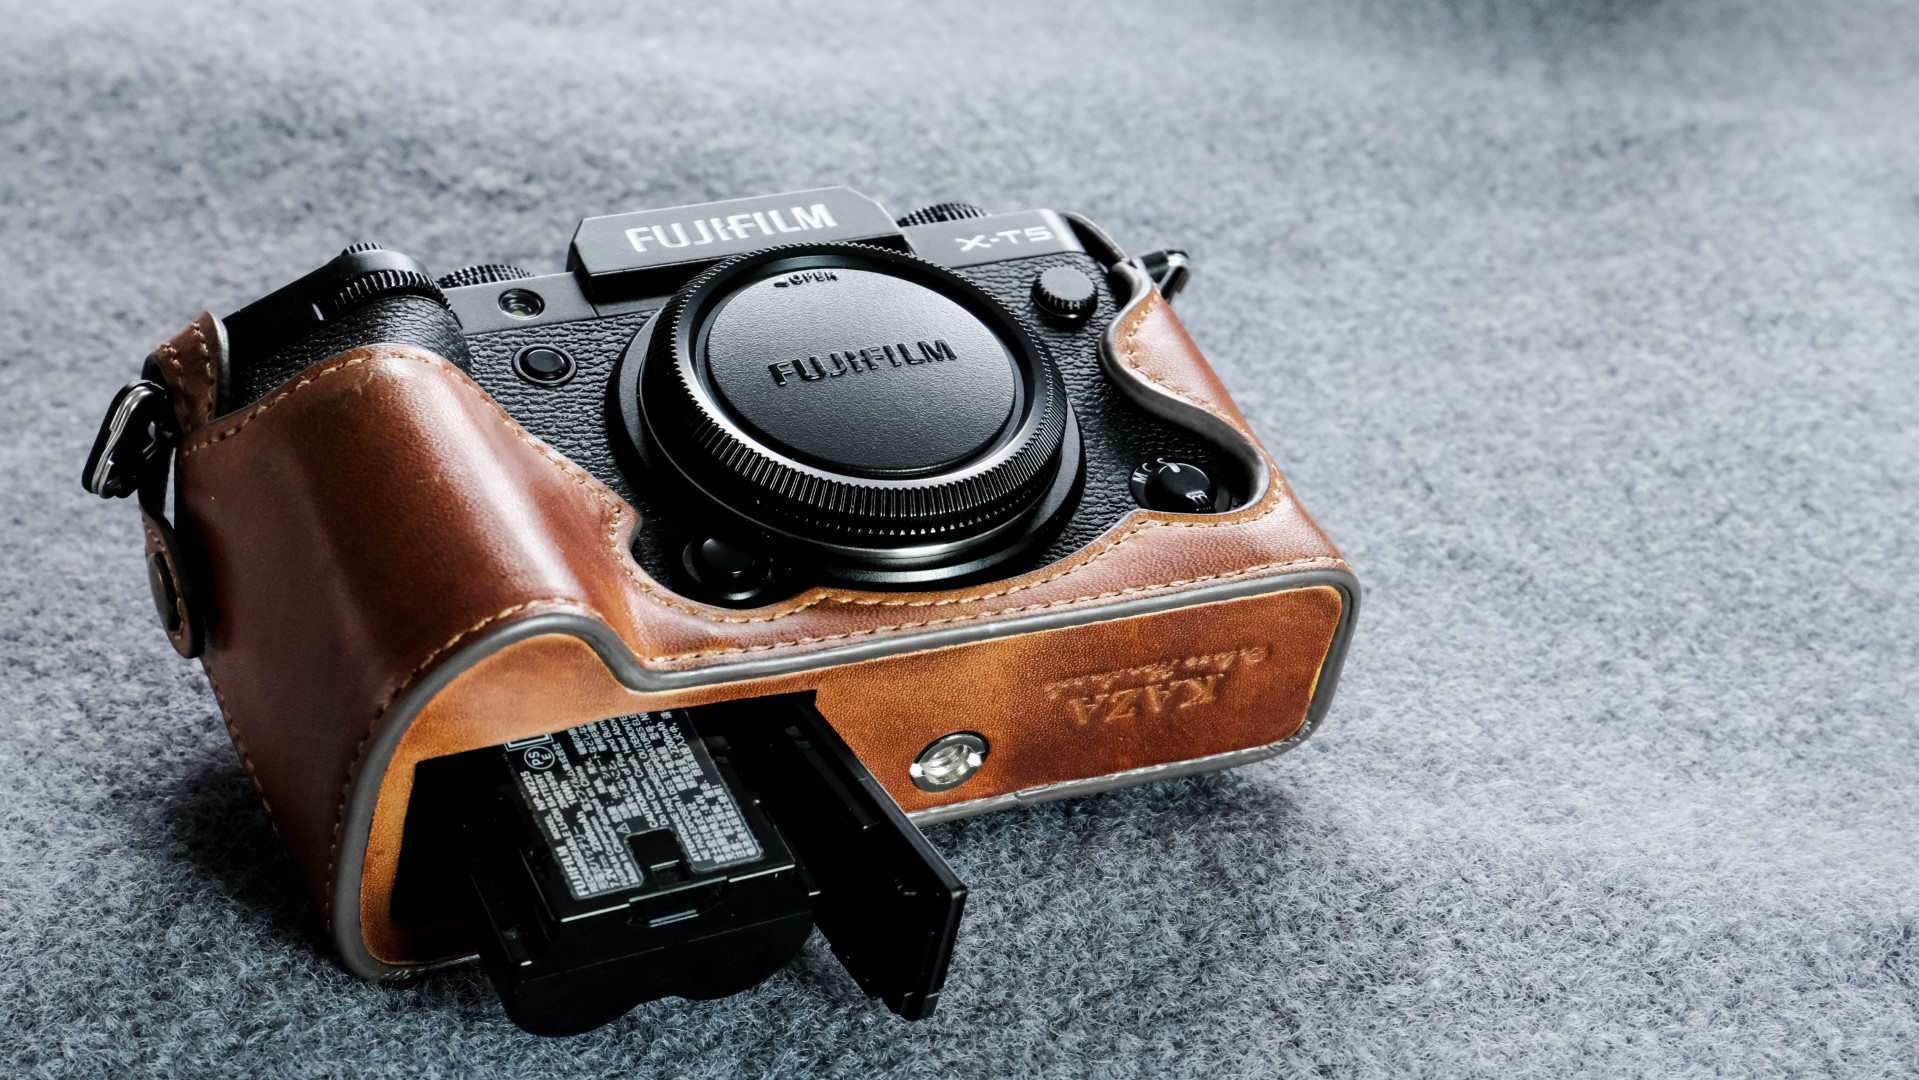 Fujifilm X-t5用カメラケース,
Fujifilm X-t5相機皮套,
Fujifilm X-t5 leather case,
Fujifilm X-t5 half case